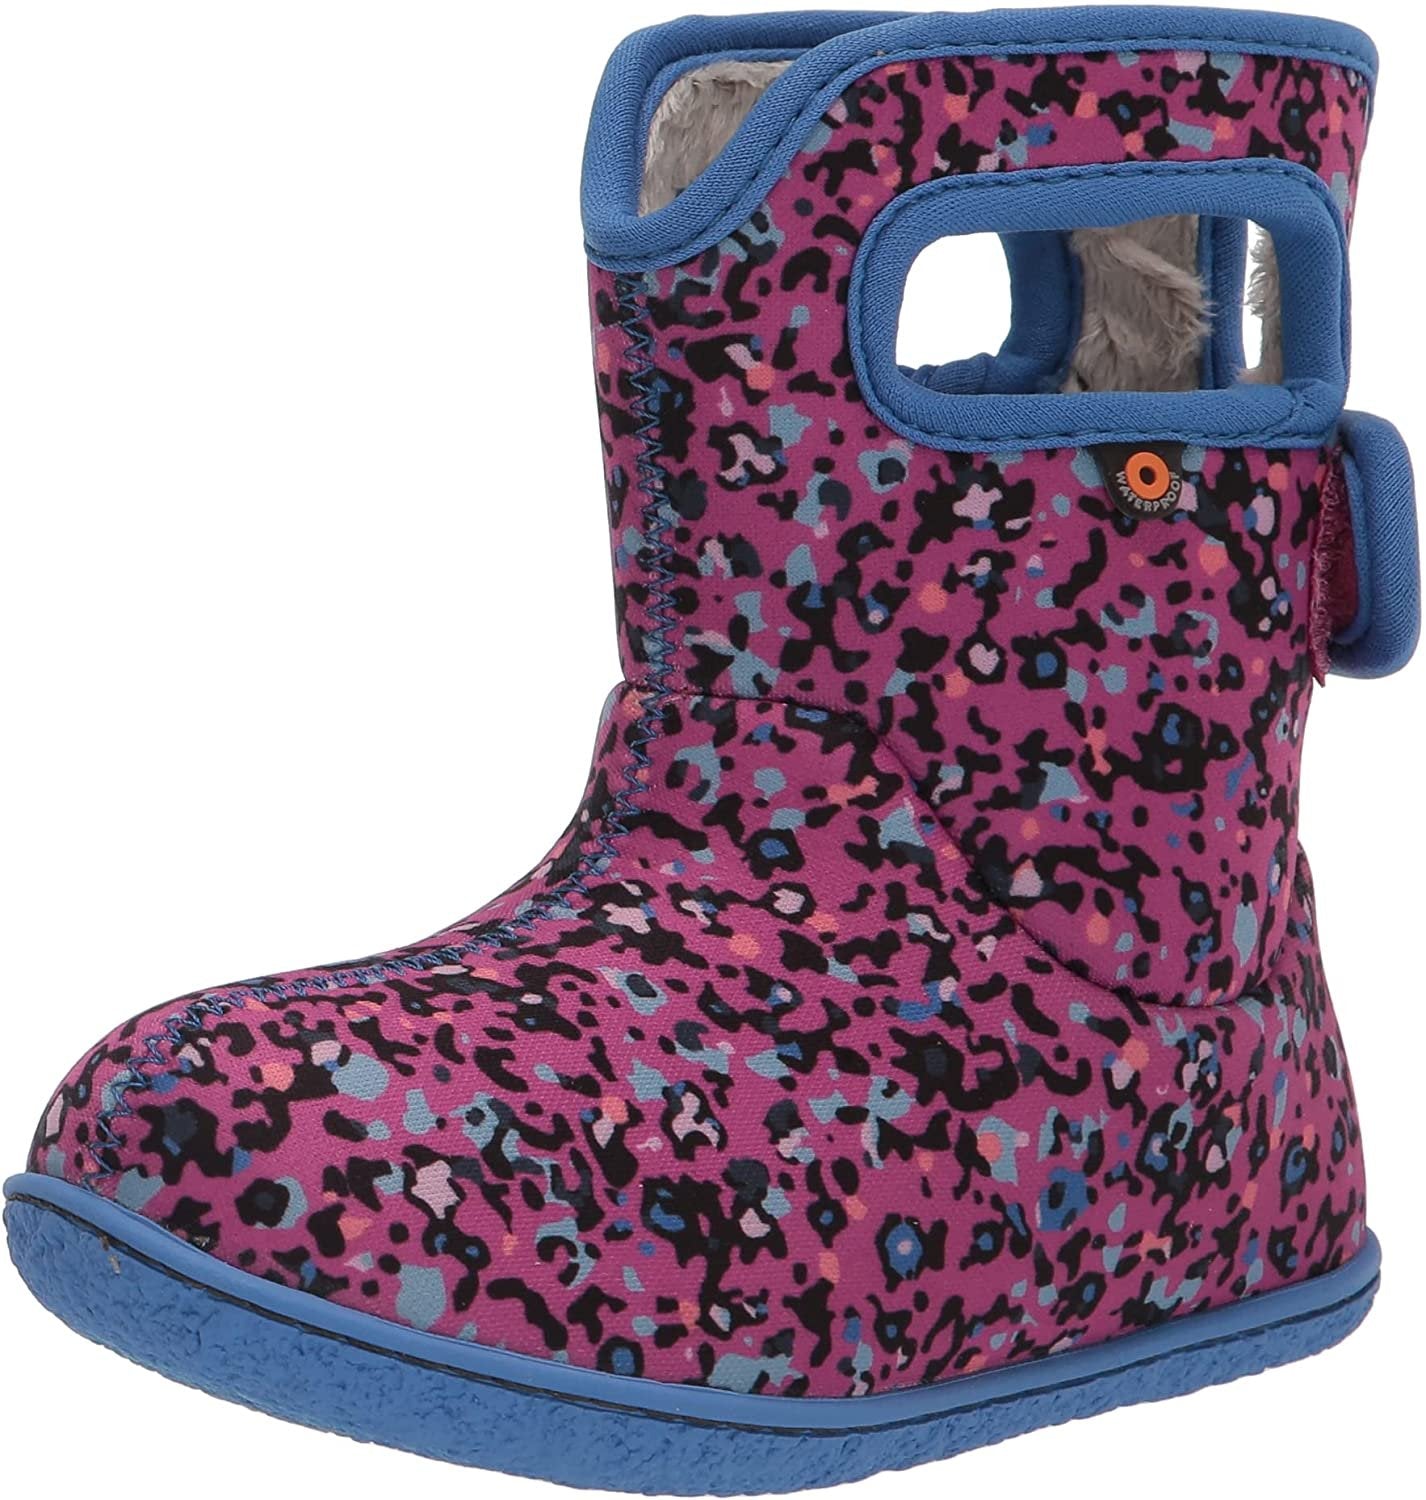 BOGS Kid's Winter Rain Boot Pink Textures